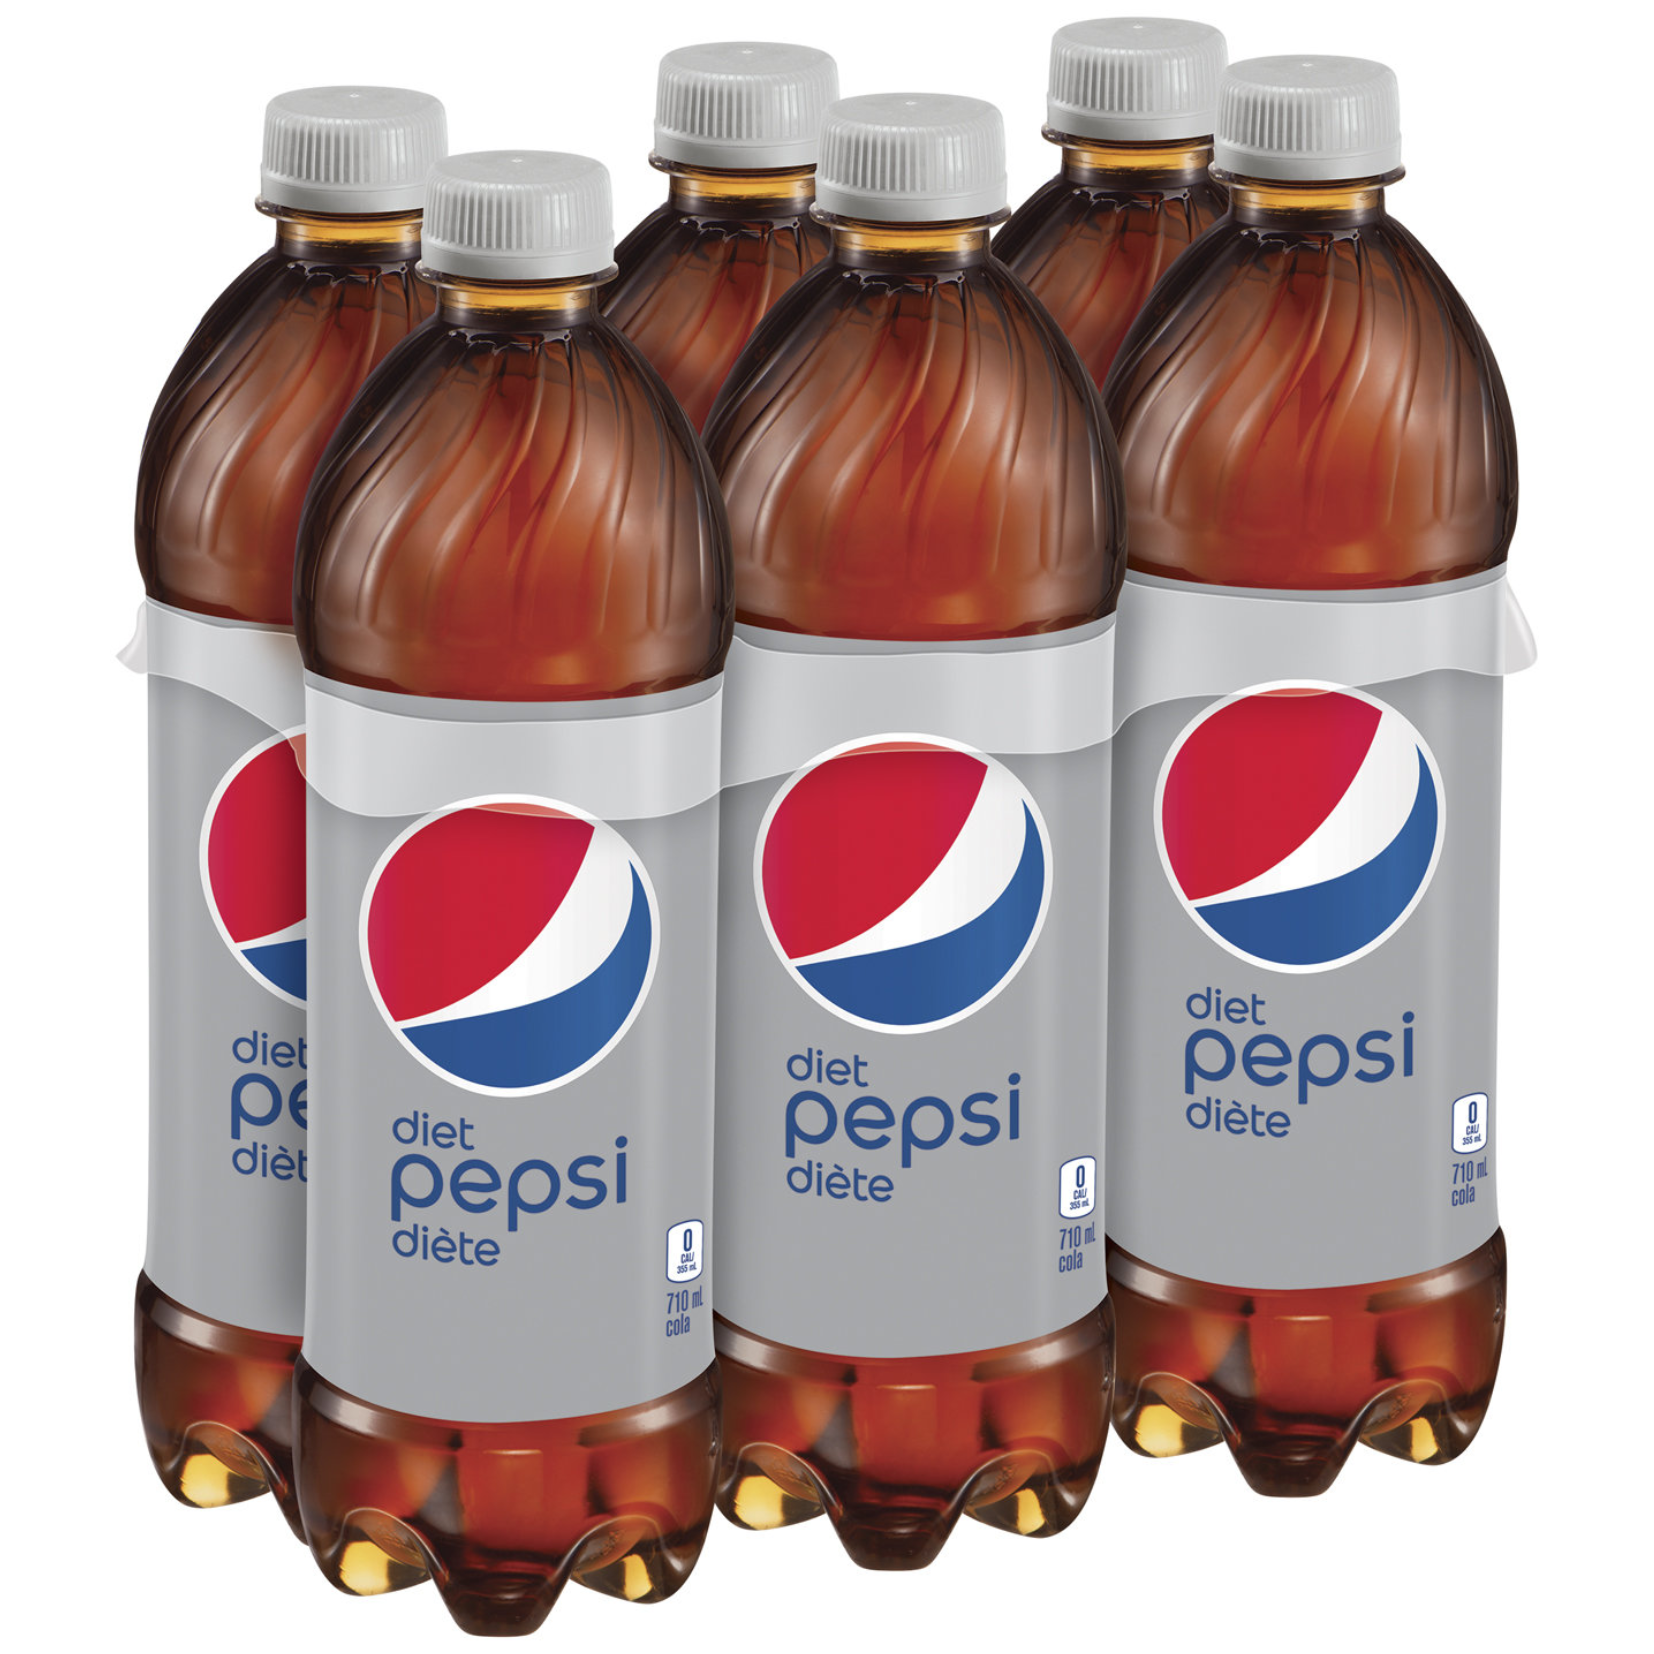 Pepsi Diet 710ml x 6